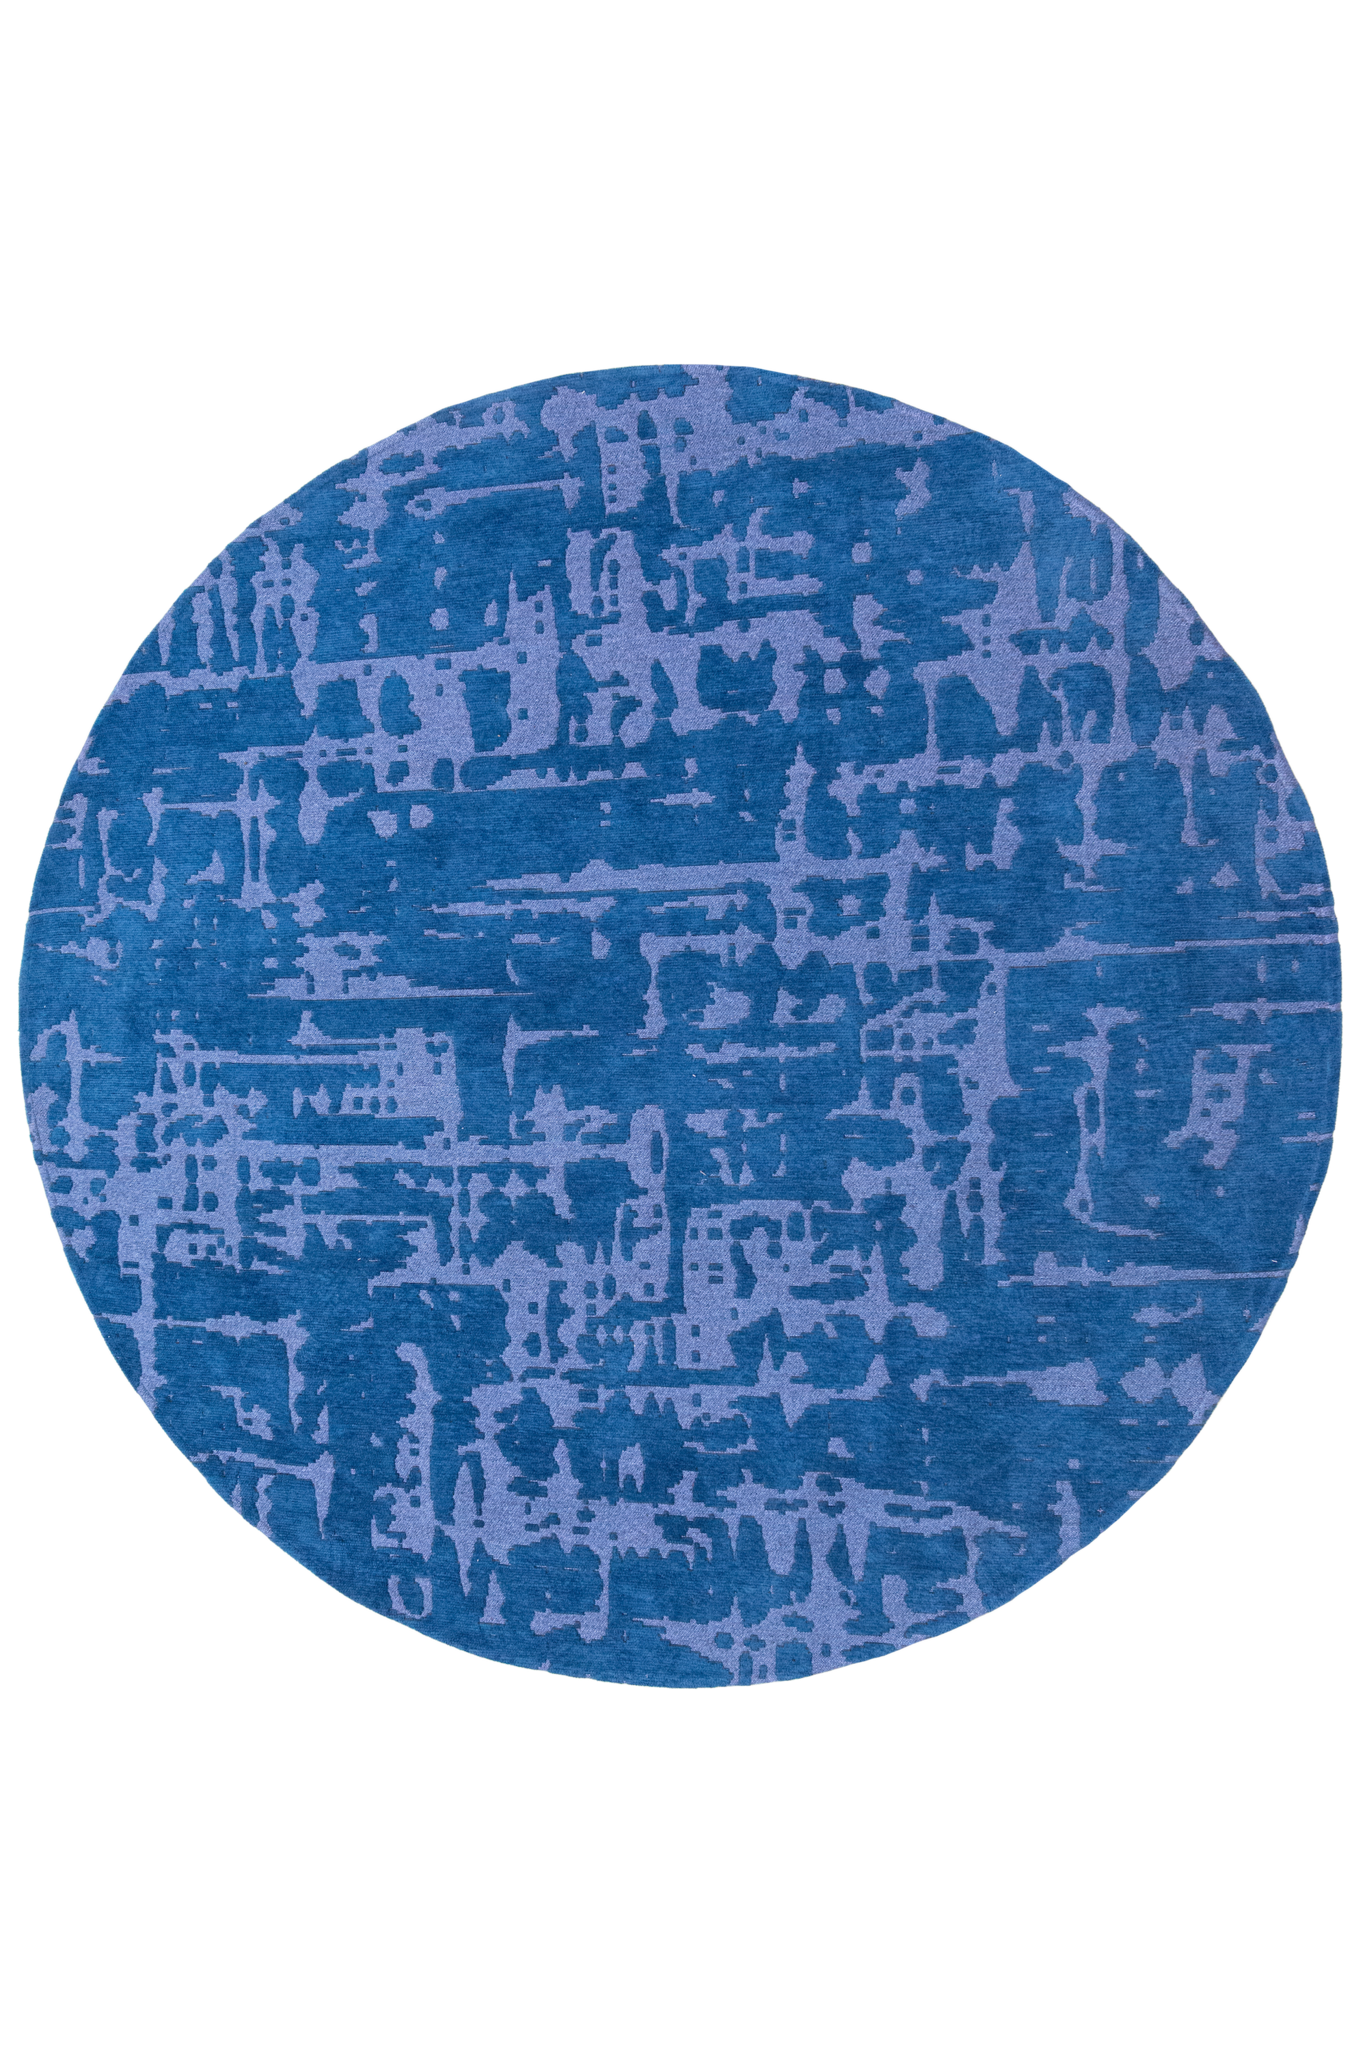 Baobab - Suarez Blue 9250 ☞ Size: 280 x 390 cm